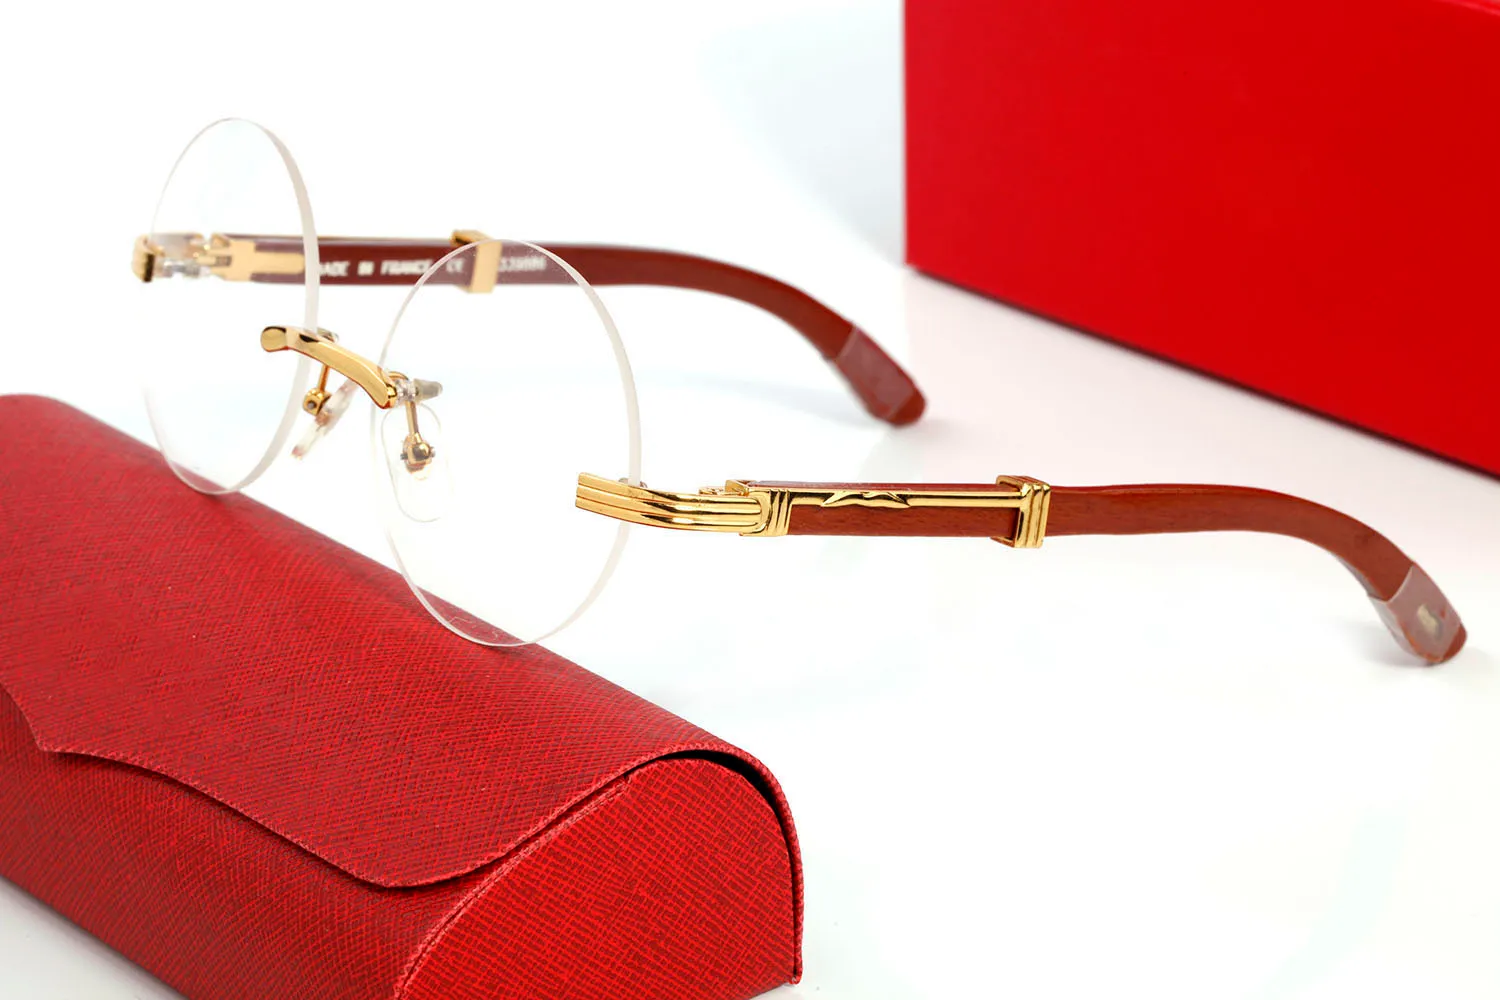 Runde Büffelhorn Sonnenbrille für Männer Frauen gerahmte Sonnenbrille Vintage Designer Brillen in goldenen Silberrahmen braune Holzbeine Ey318t